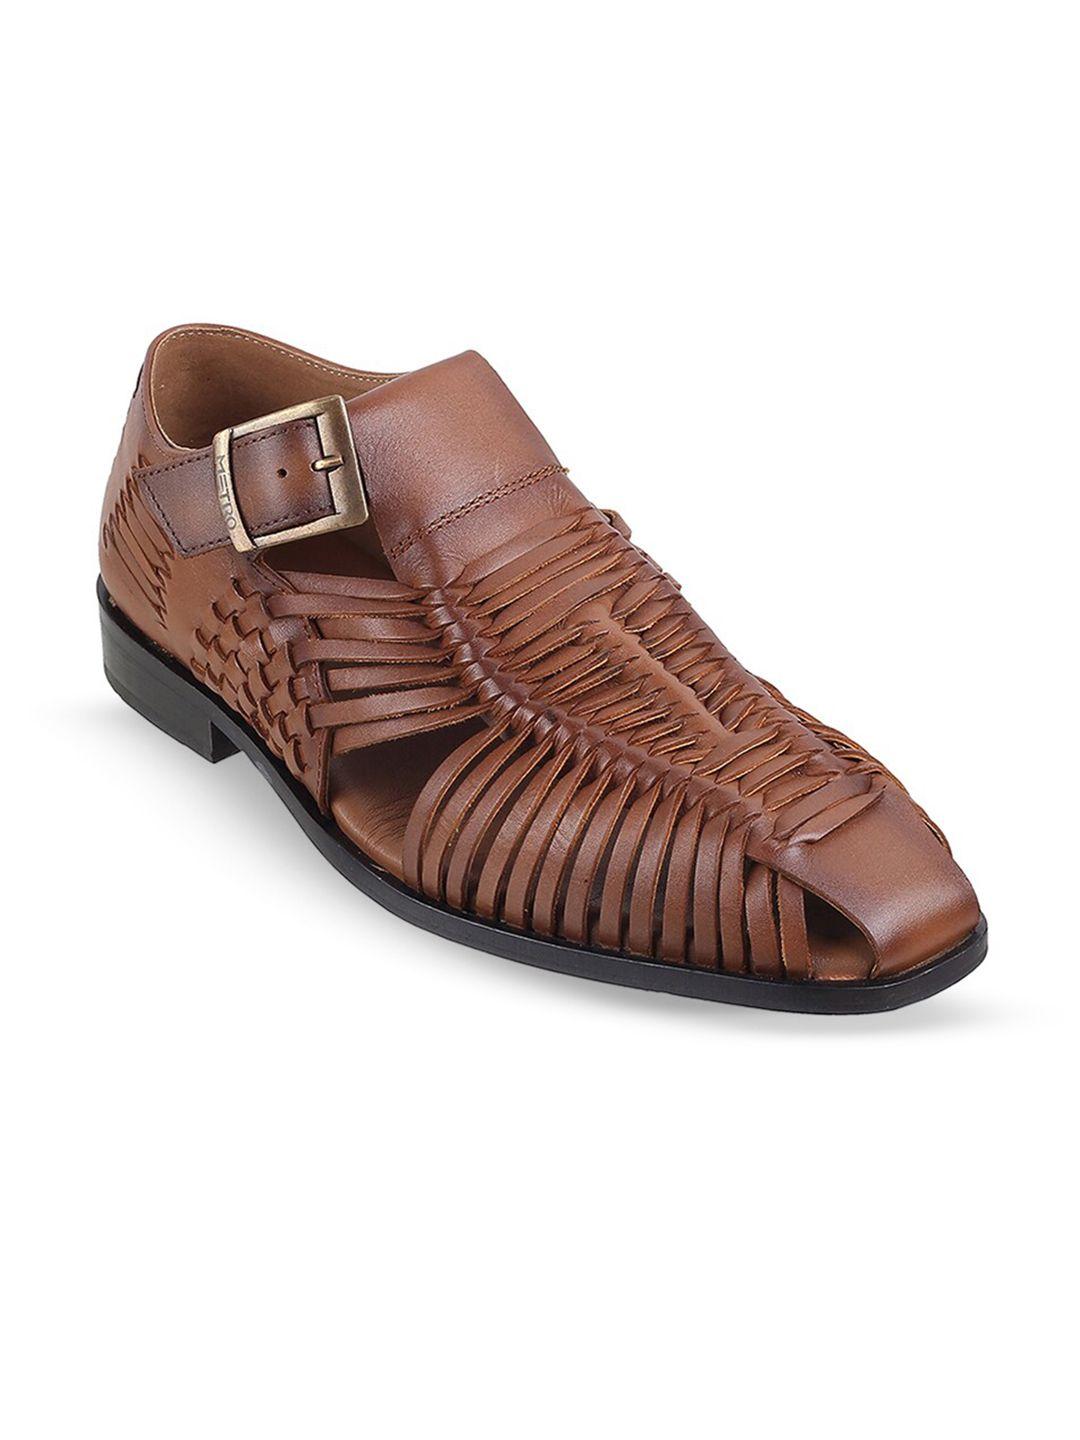 metro men leather gladiators sandals